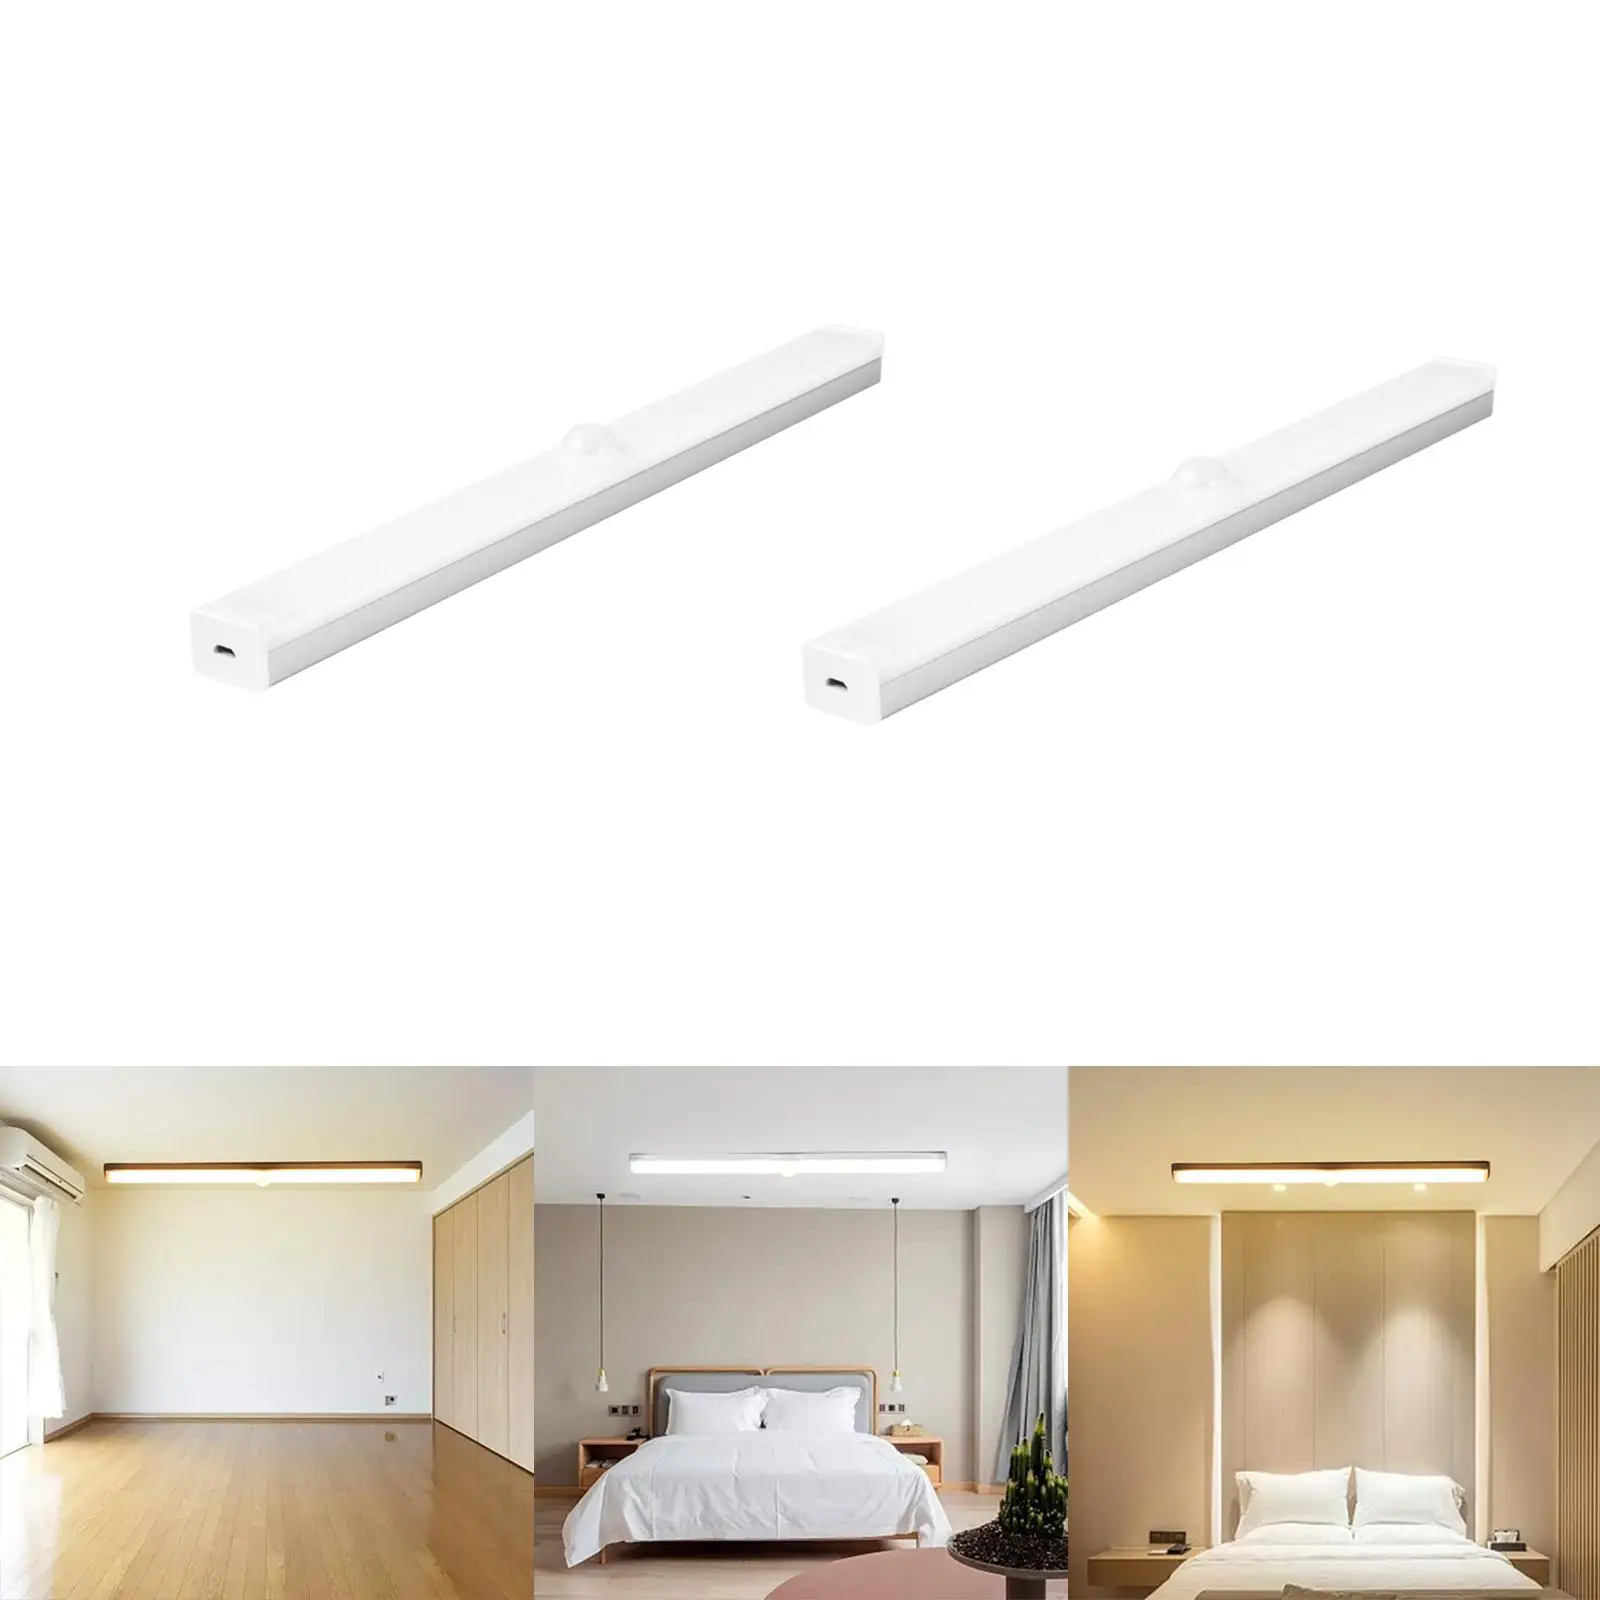 Body Sensor Lights Home Dimming LED Under Cabinet Lighting Lights Strip Bar for Desk Wardrobe Display Case Room Living Room